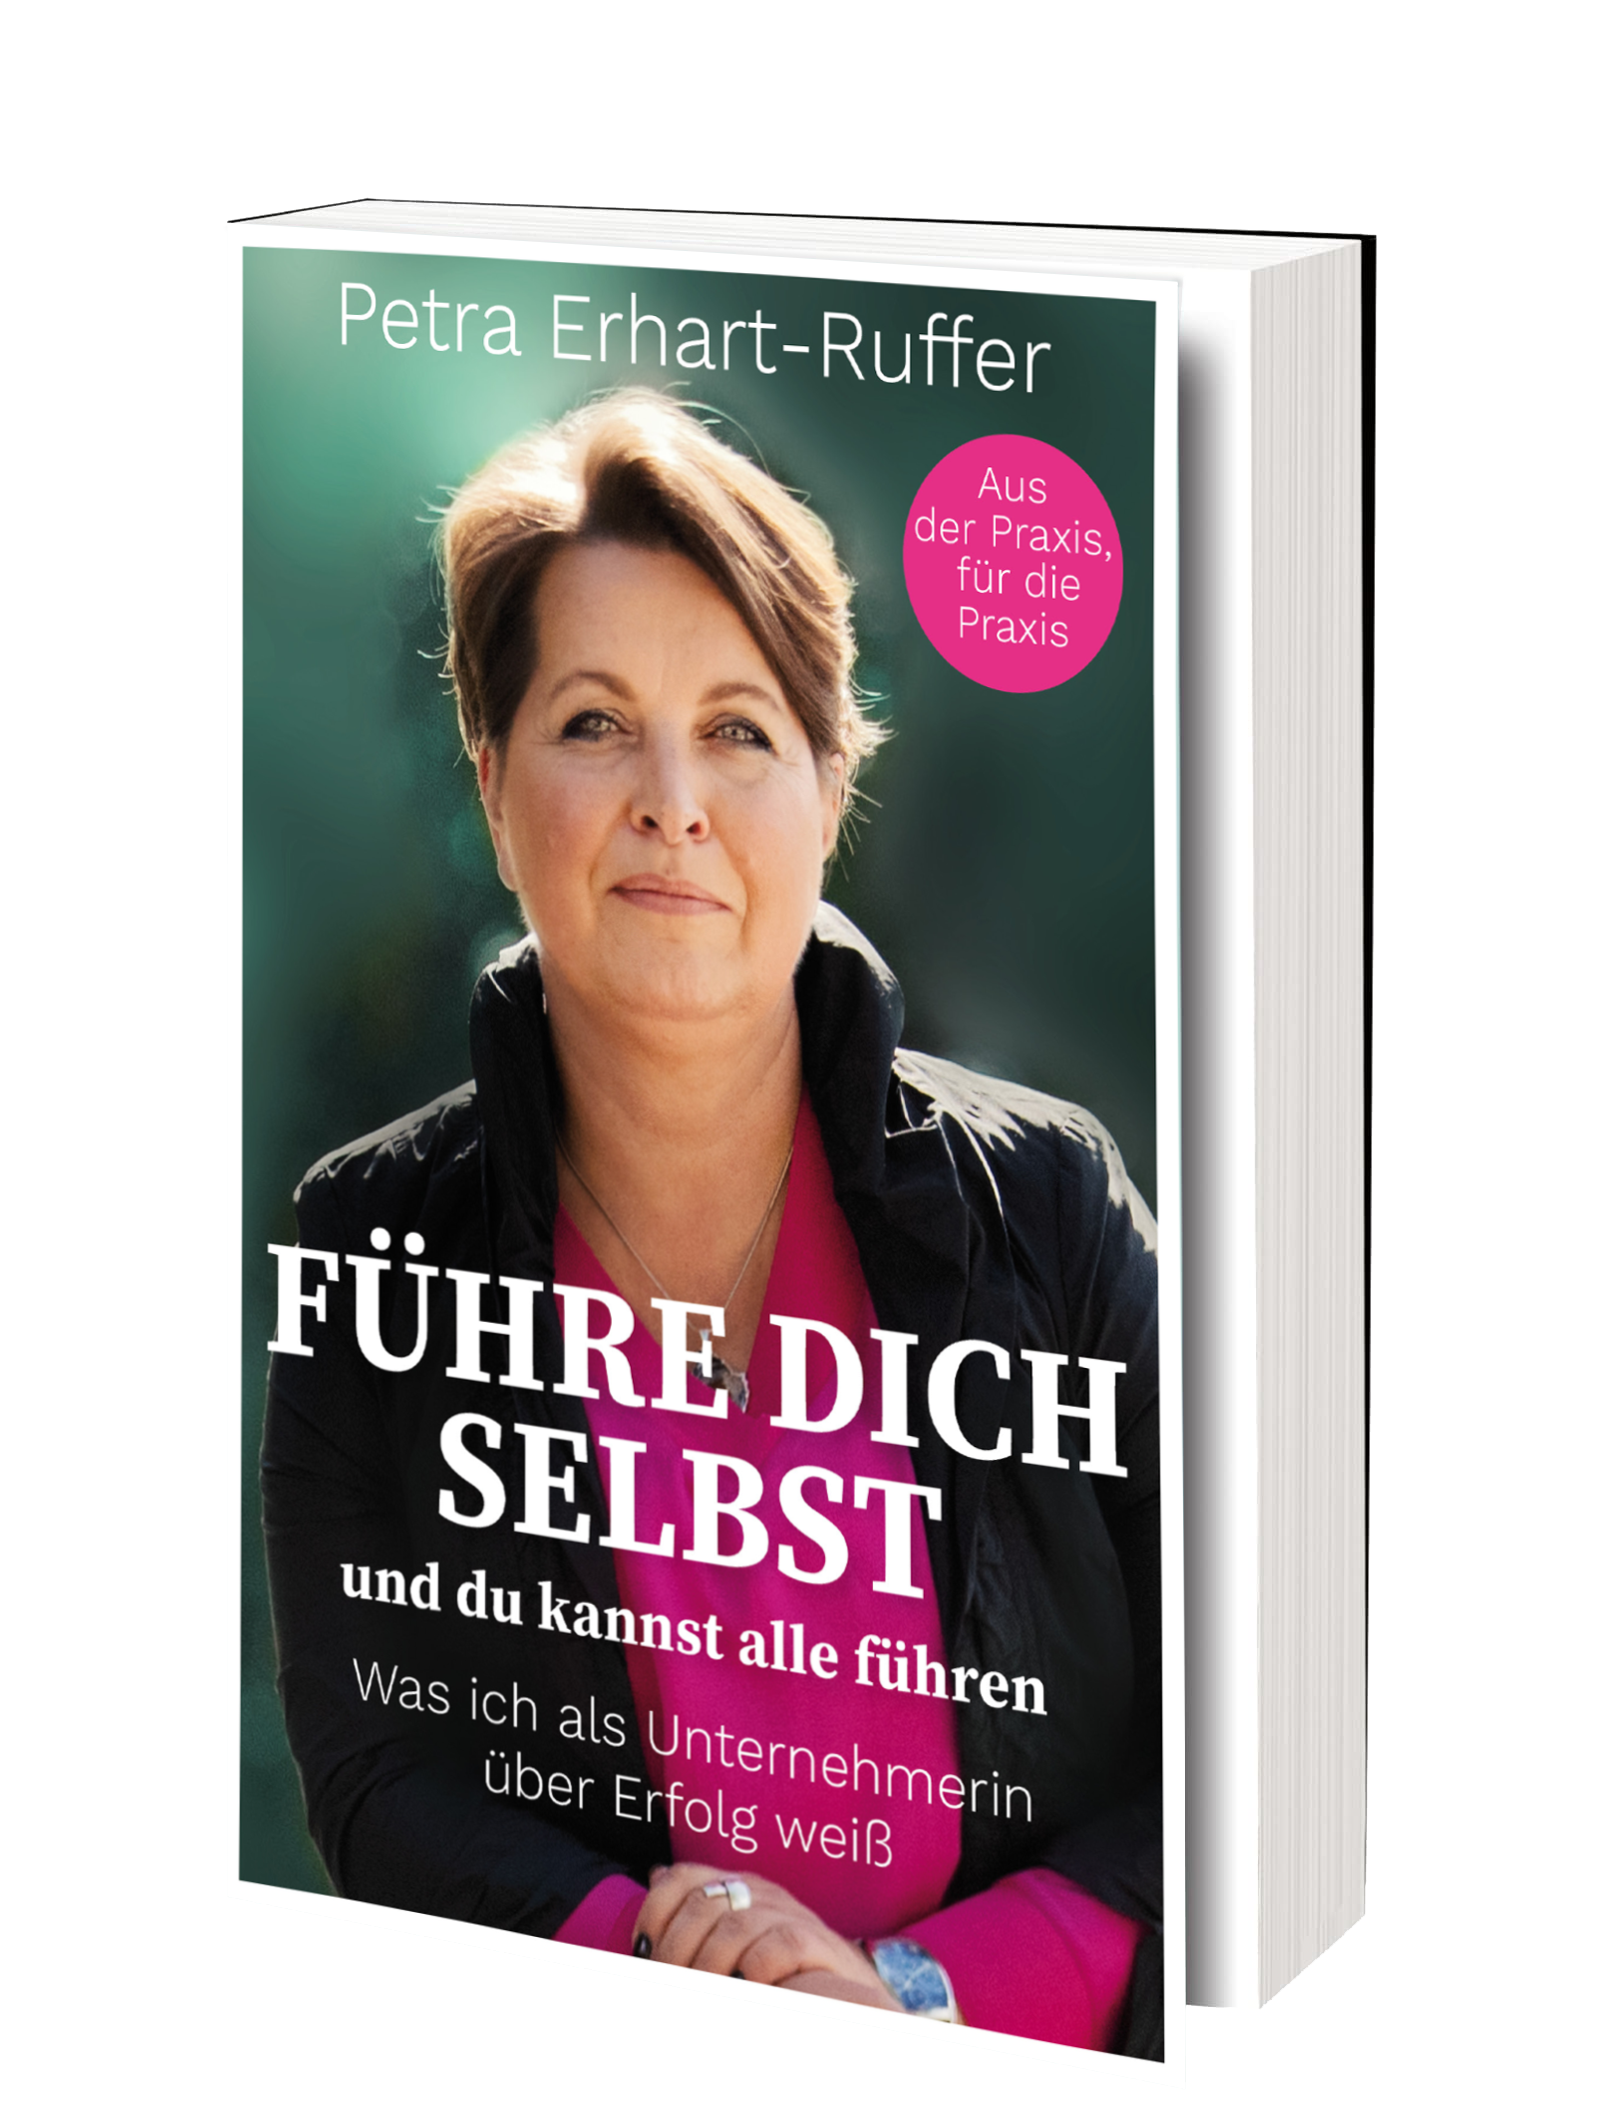 Buchcover mit Petra Erhart-Ruffer